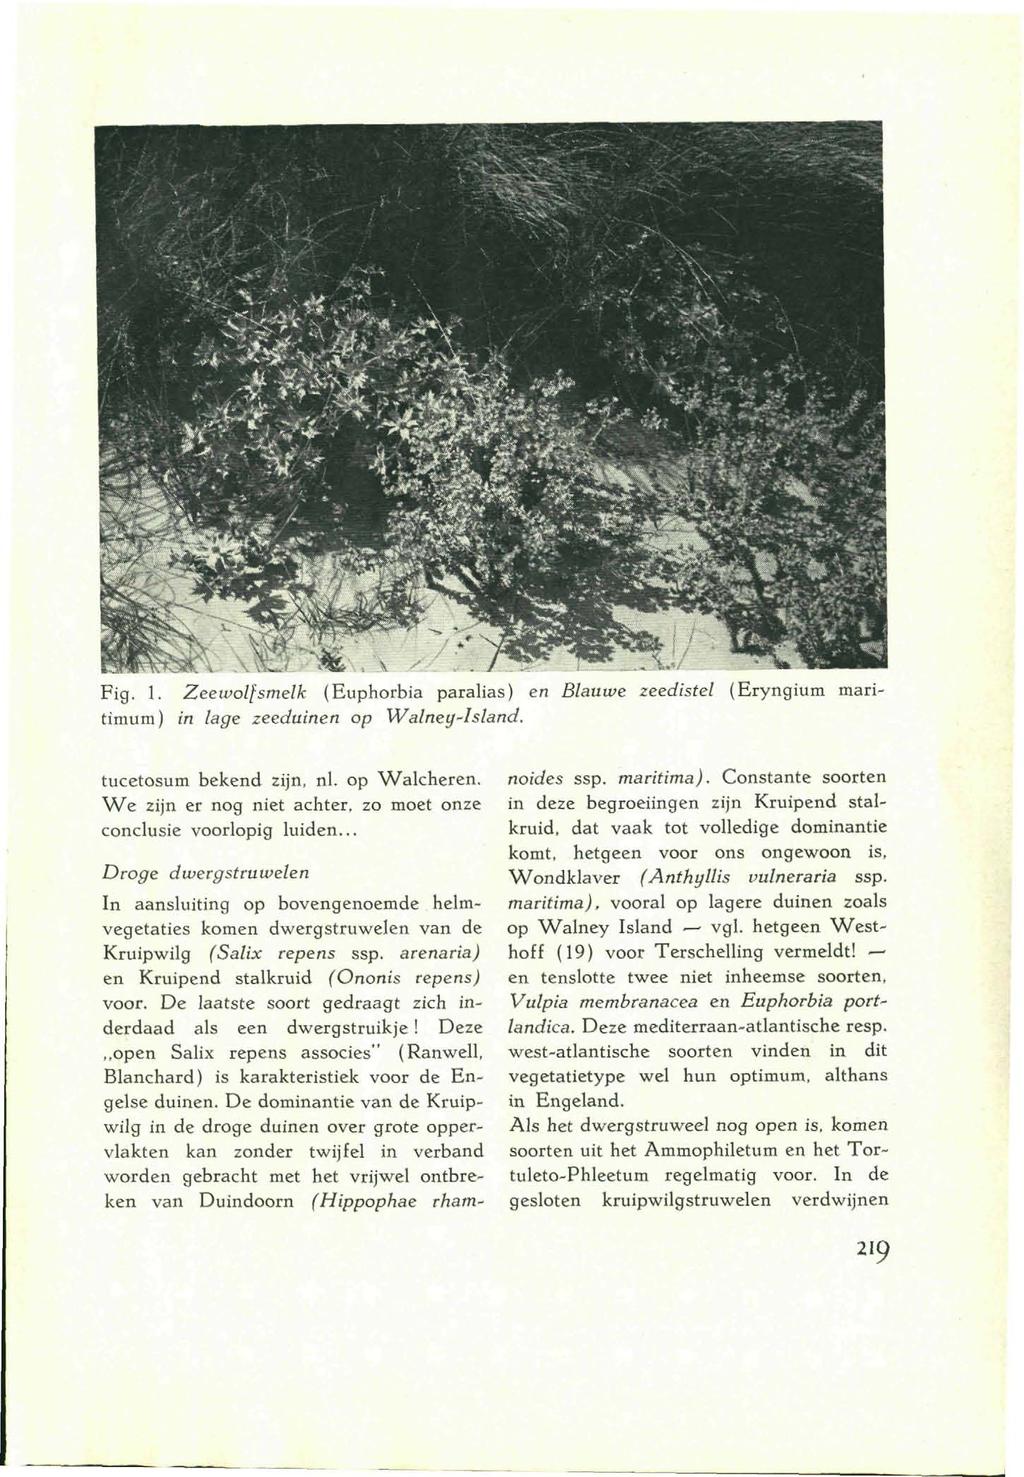 Fig. 1. Zeewolfsmelk (Euphorbia paralias) en Blauwe zeedistel (Eryngium maritimum) in lage zeeduinen op Walney-Island. tucetosum bekend zijn, nl.